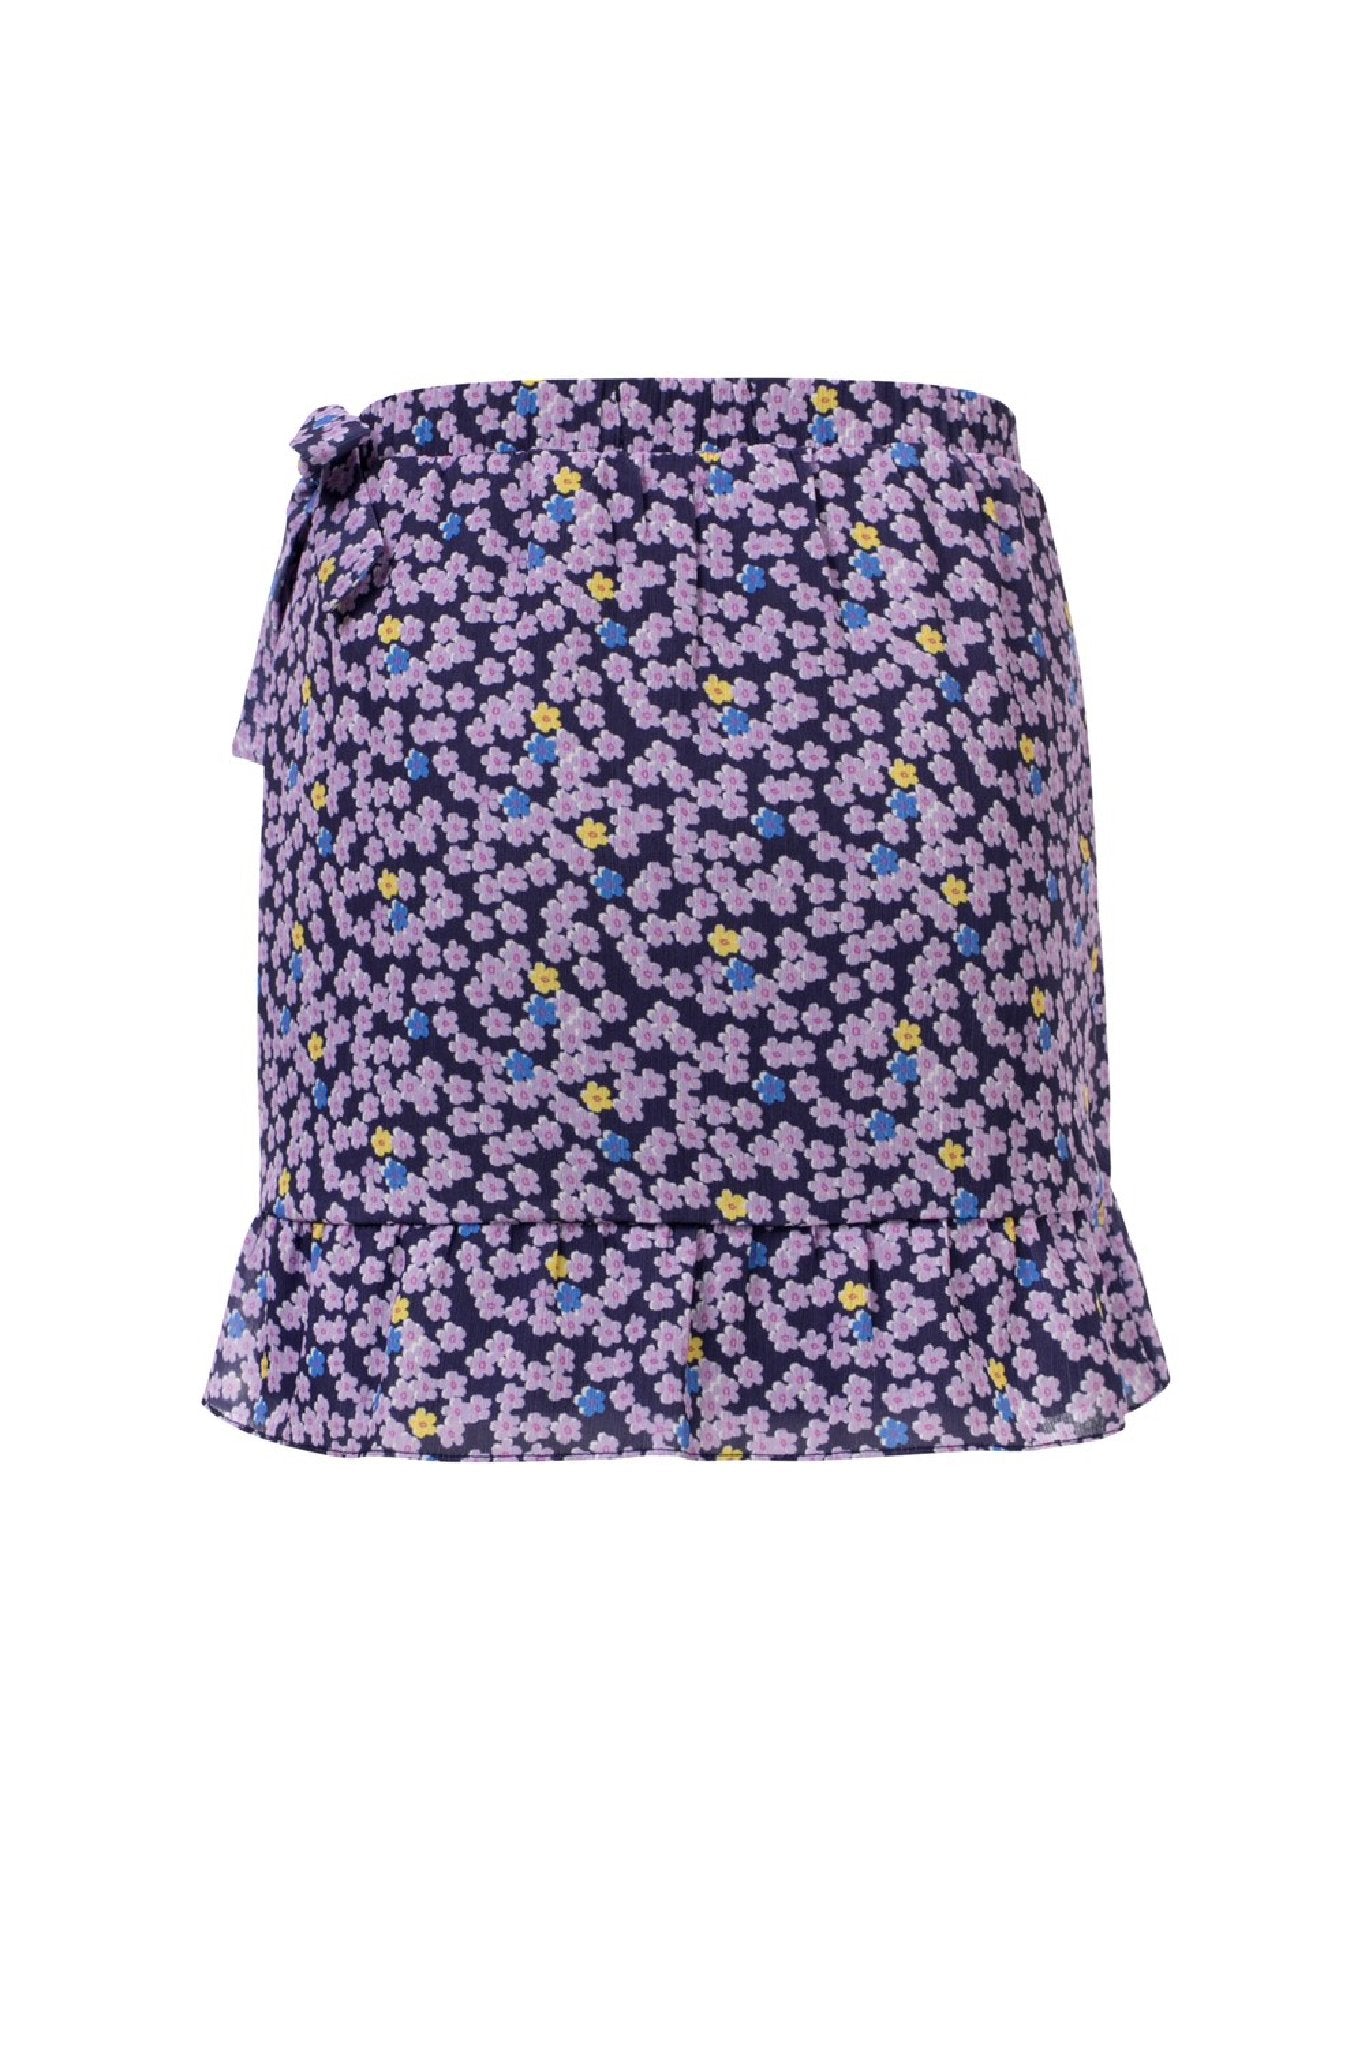 Meisjes Girls Ruffle Skirt van Looxs in de kleur 'Flower Ao in maat 164.